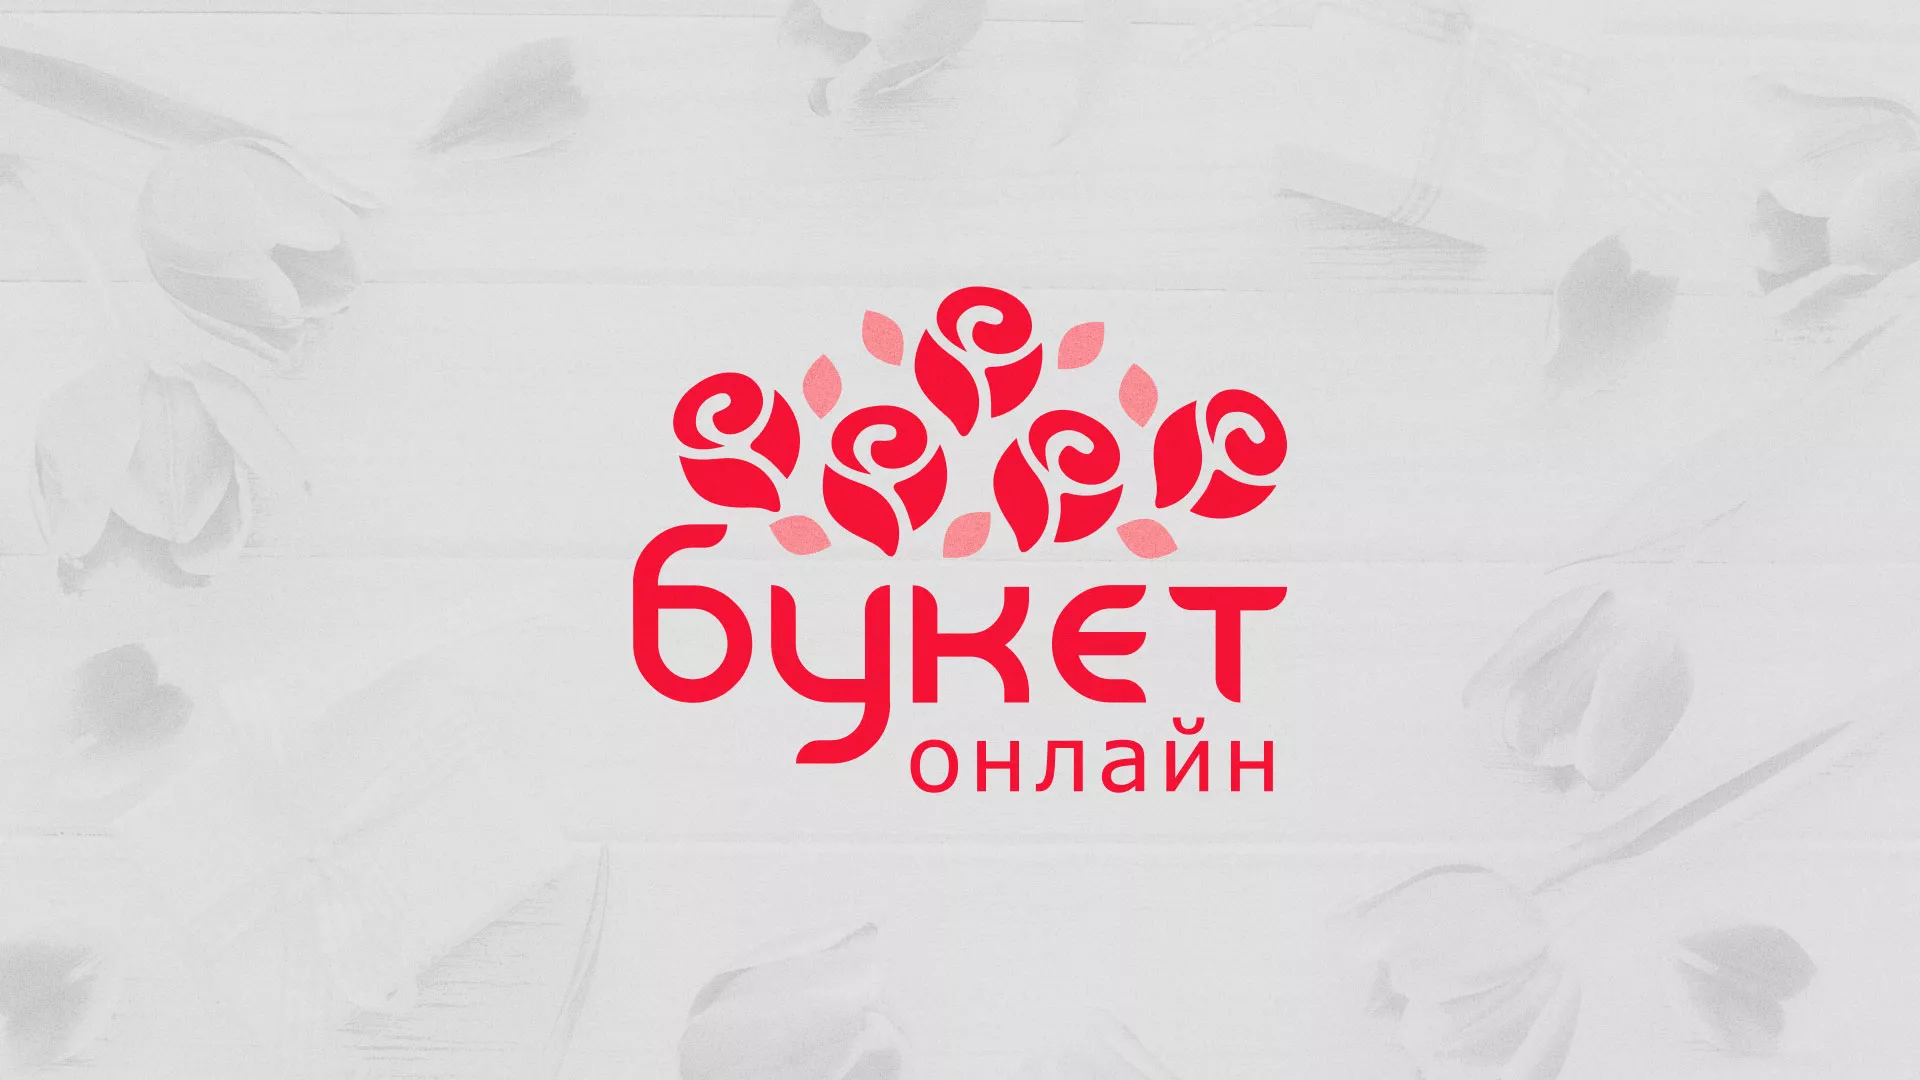 Создание интернет-магазина «Букет-онлайн» по цветам в Пустошке